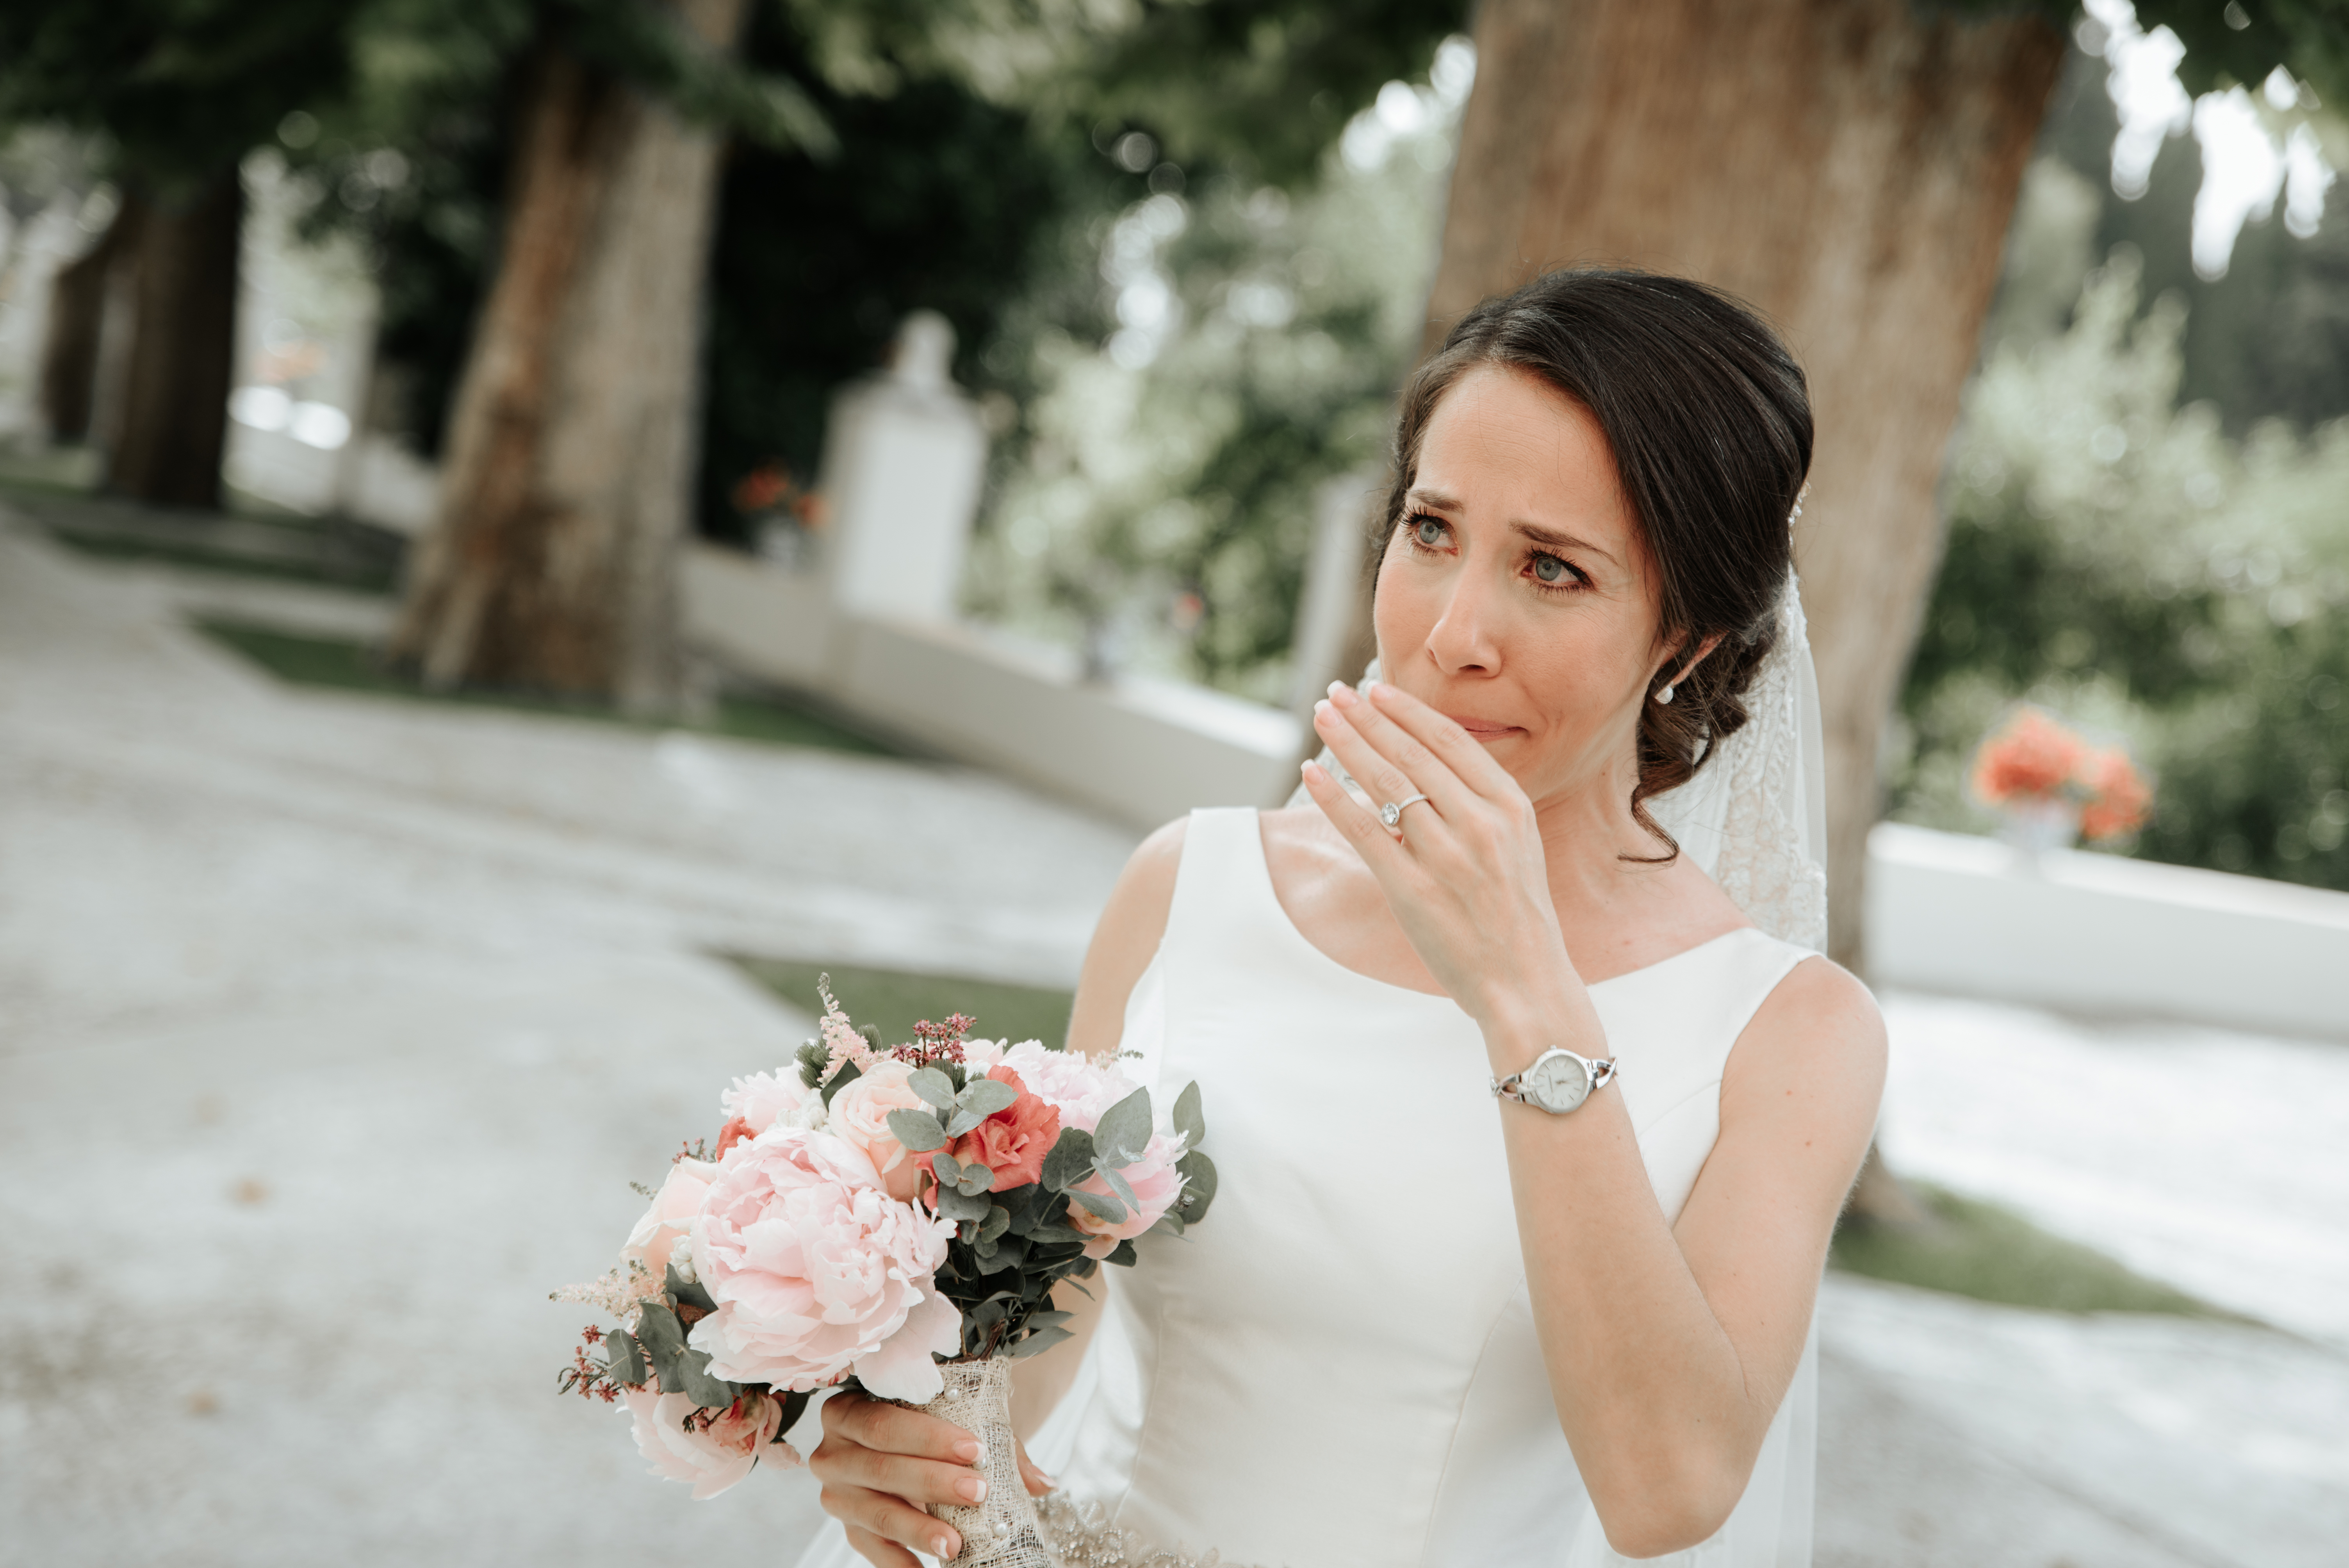 Une mariée est au bord des larmes | Source : Shutterstock